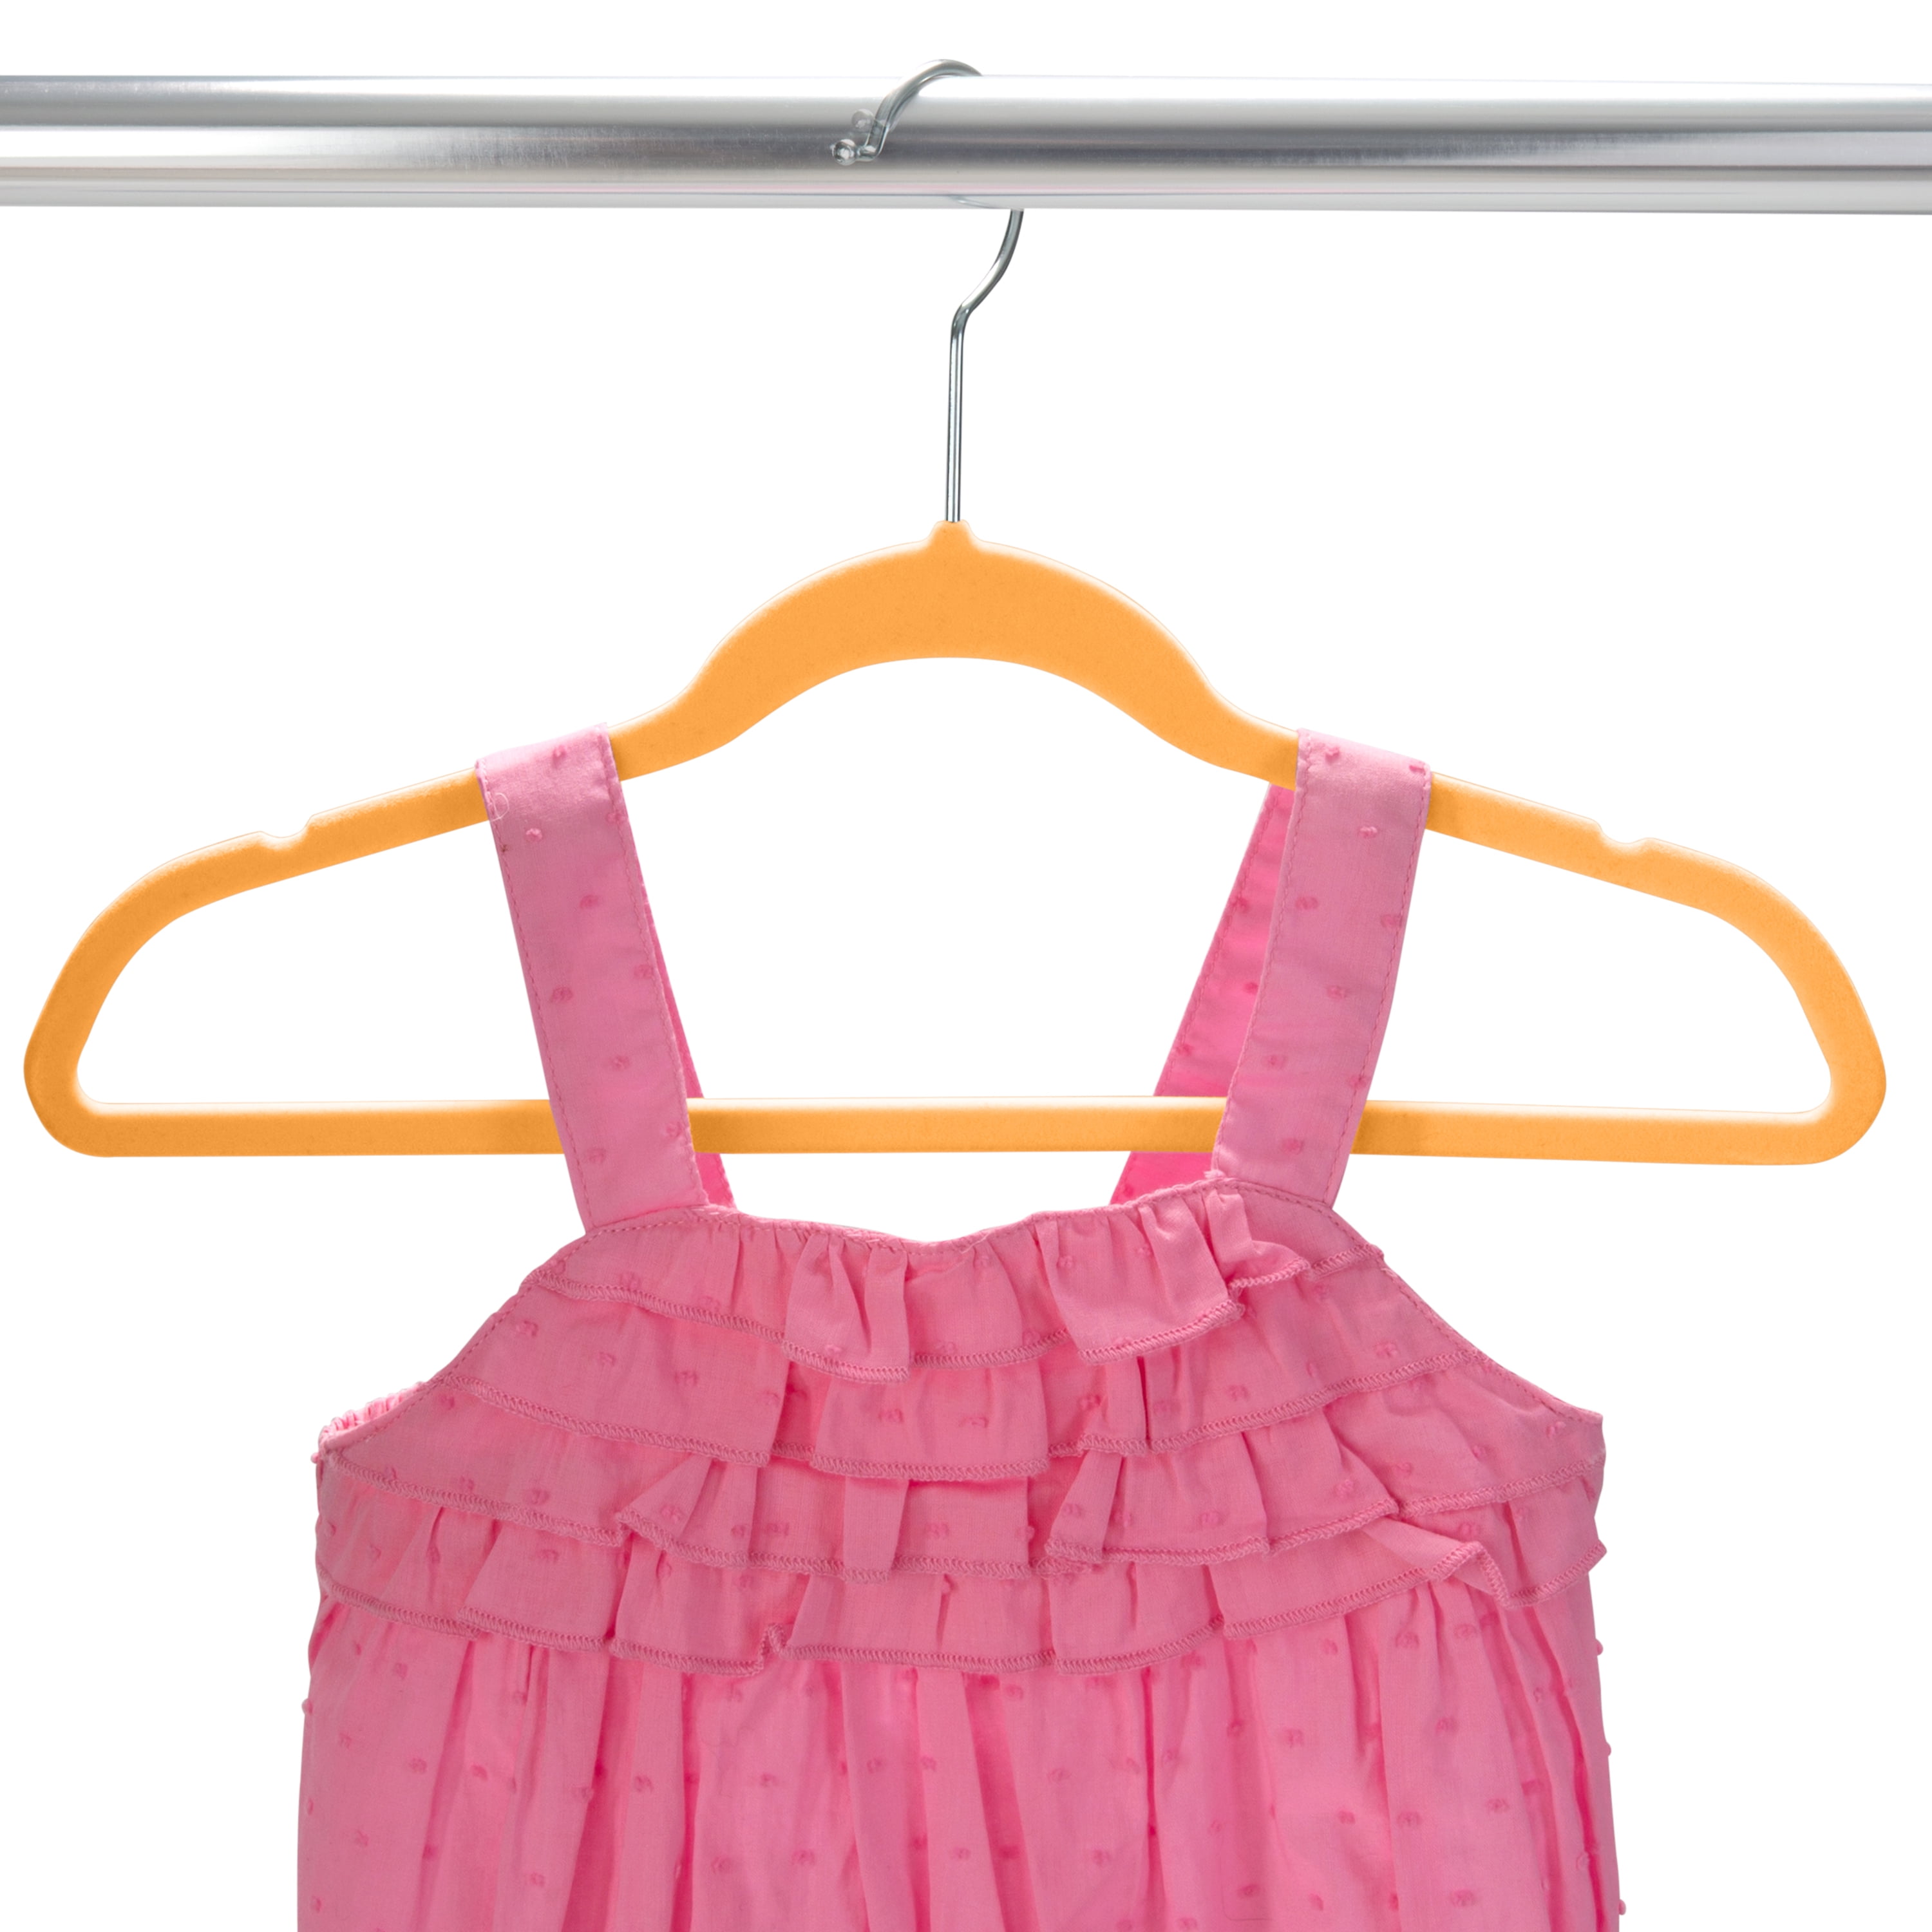 OSTO Pink Velvet Hangers 50-Pack OV-126-50-BLSH-H - The Home Depot